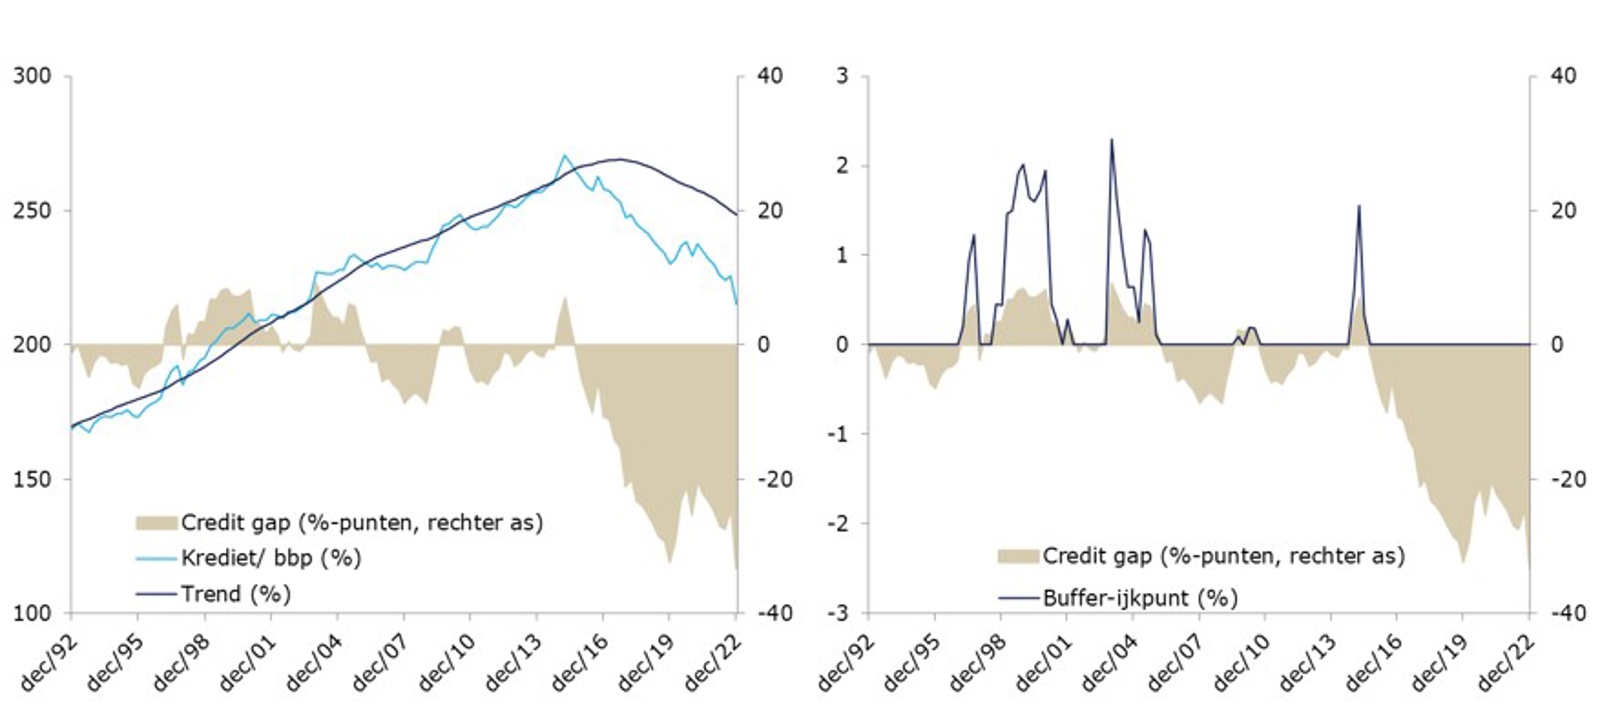 De credit gap voor Nederland en de bijbehorende buffer-ijkpunt